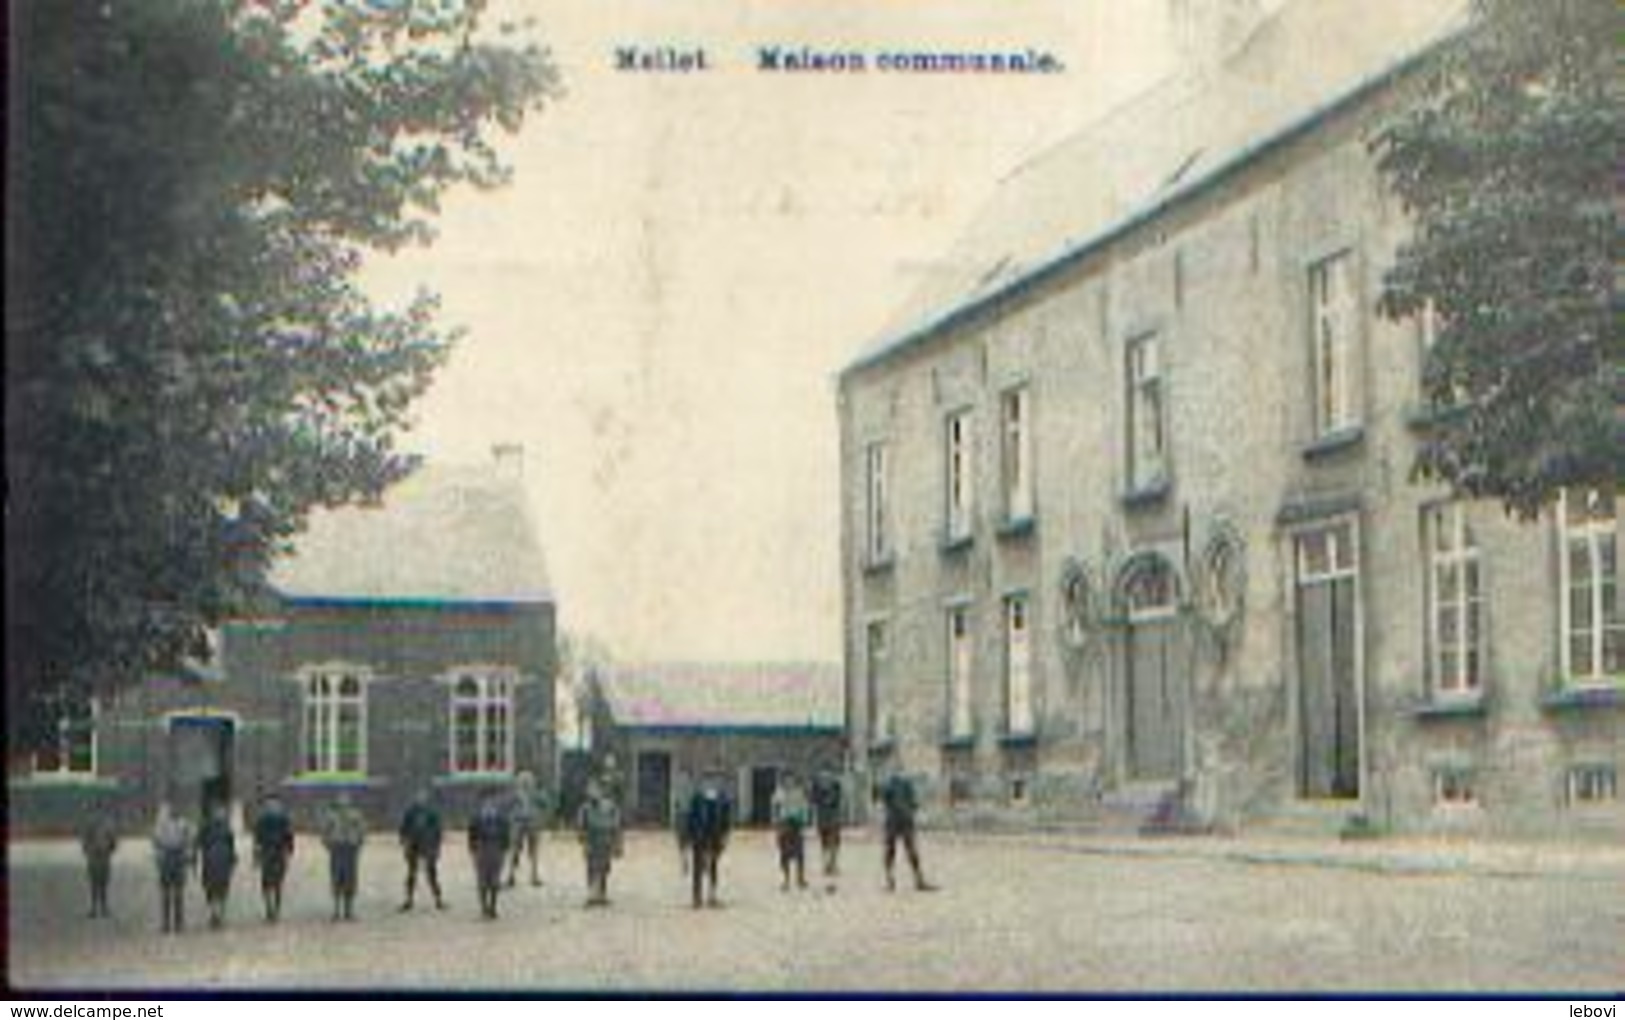 MELLET « Maison Communale » (1920) - Les Bons Villers